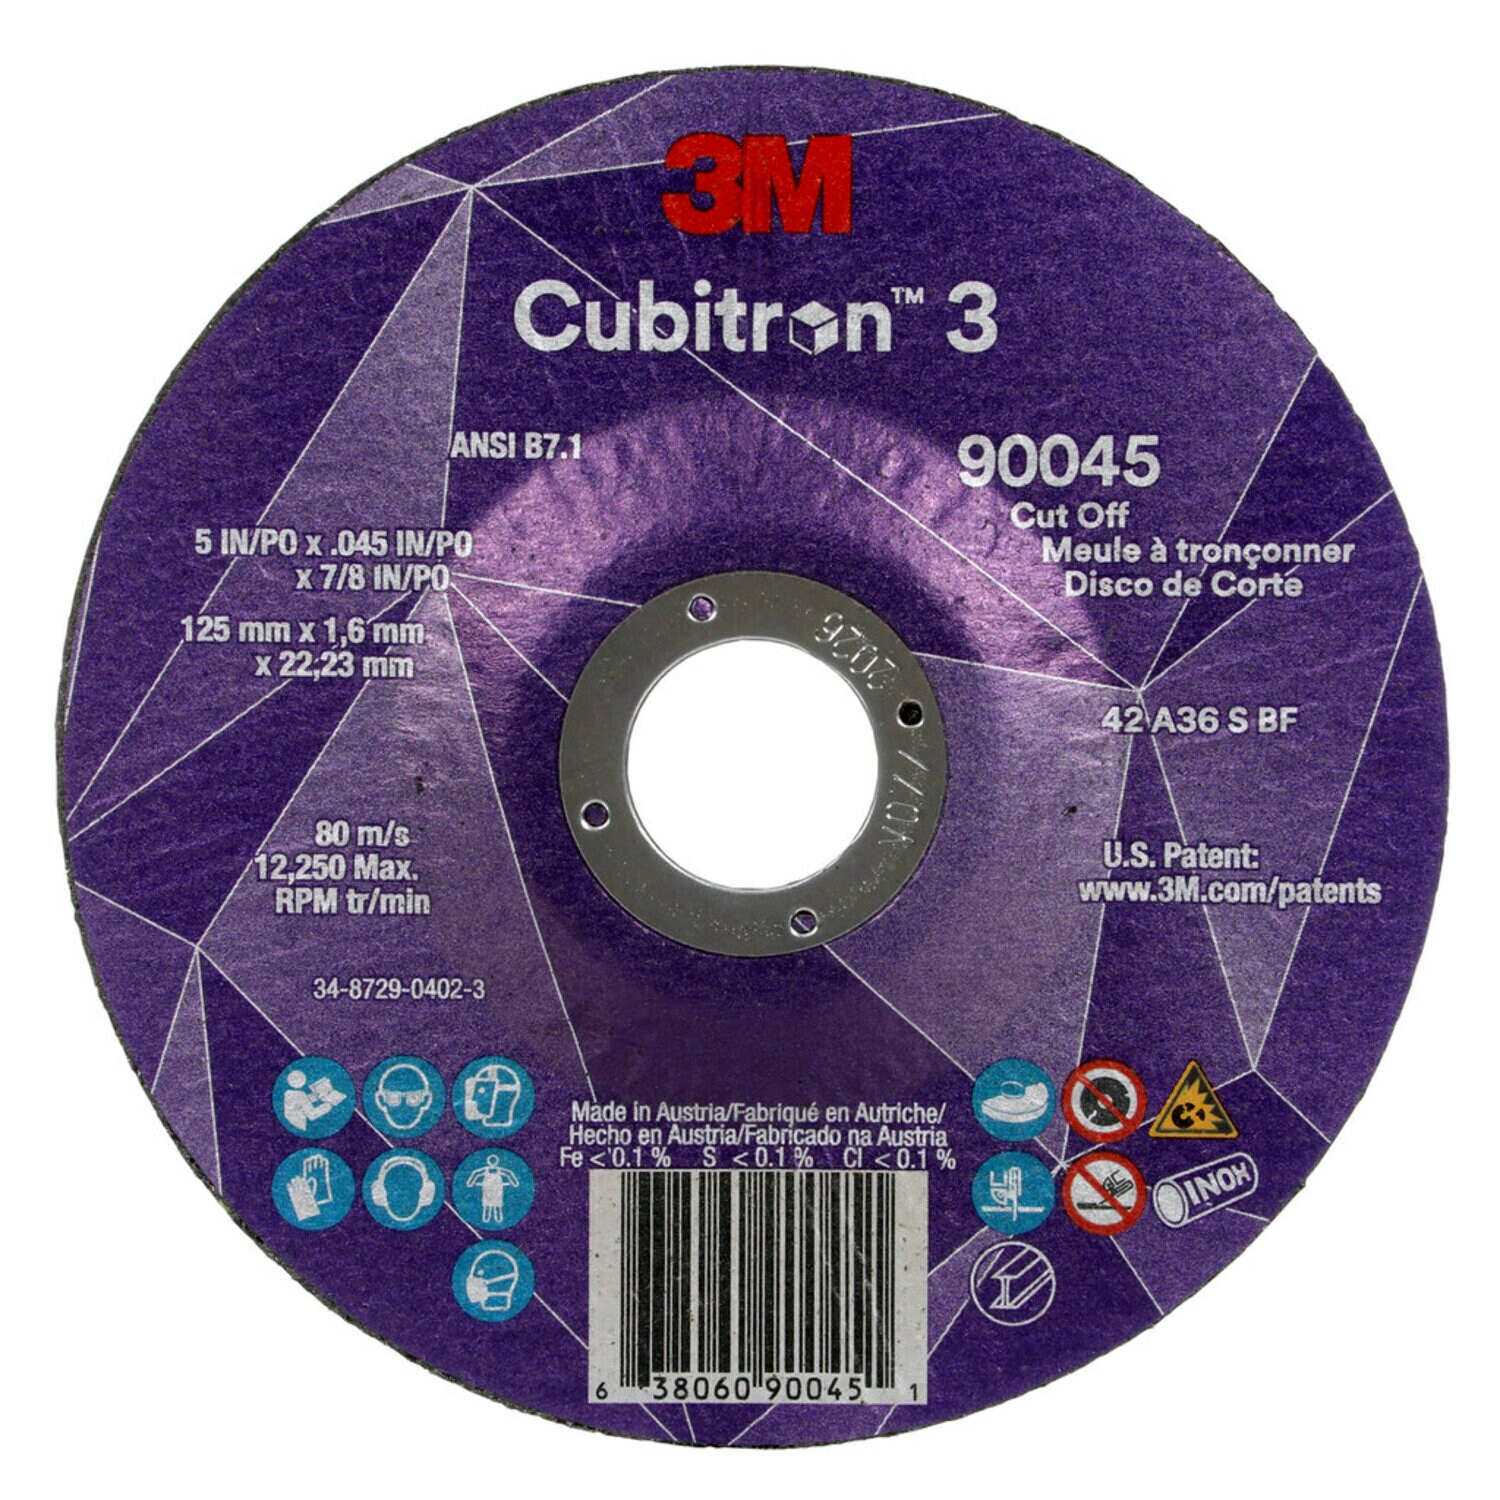 7100304010 - 3M Cubitron 3 Cut-Off Wheel, 90045, 36+, T27, 5 in x 0.045 in x 7/8 in
(125 x 1.6 x 22.23 mm), ANSI, 25/Pack, 50 ea/Case